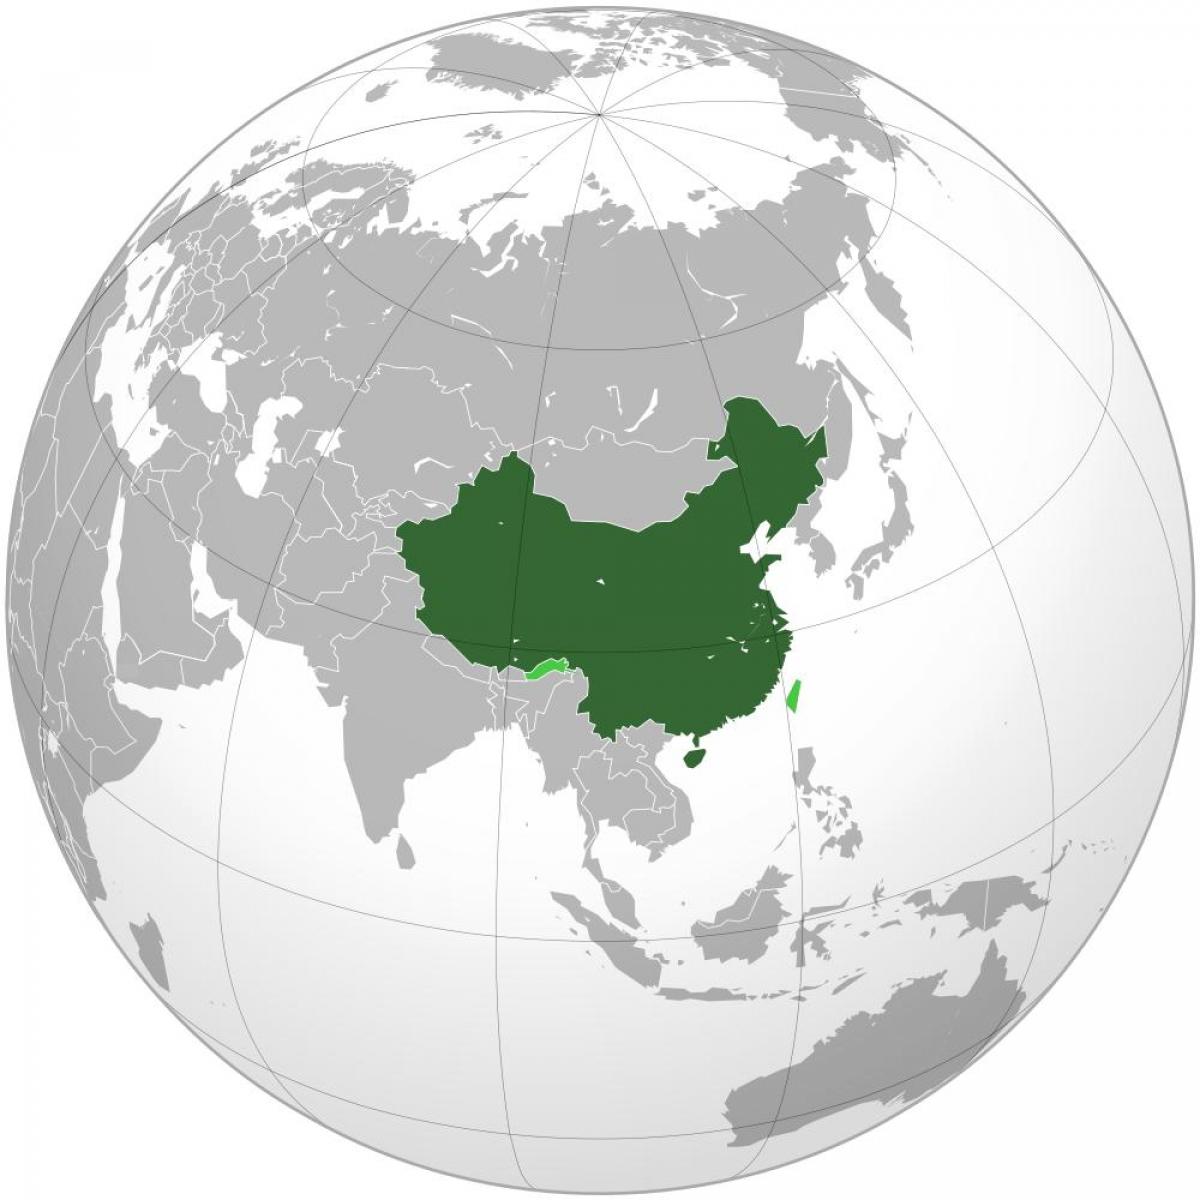 Kina hartën e botës